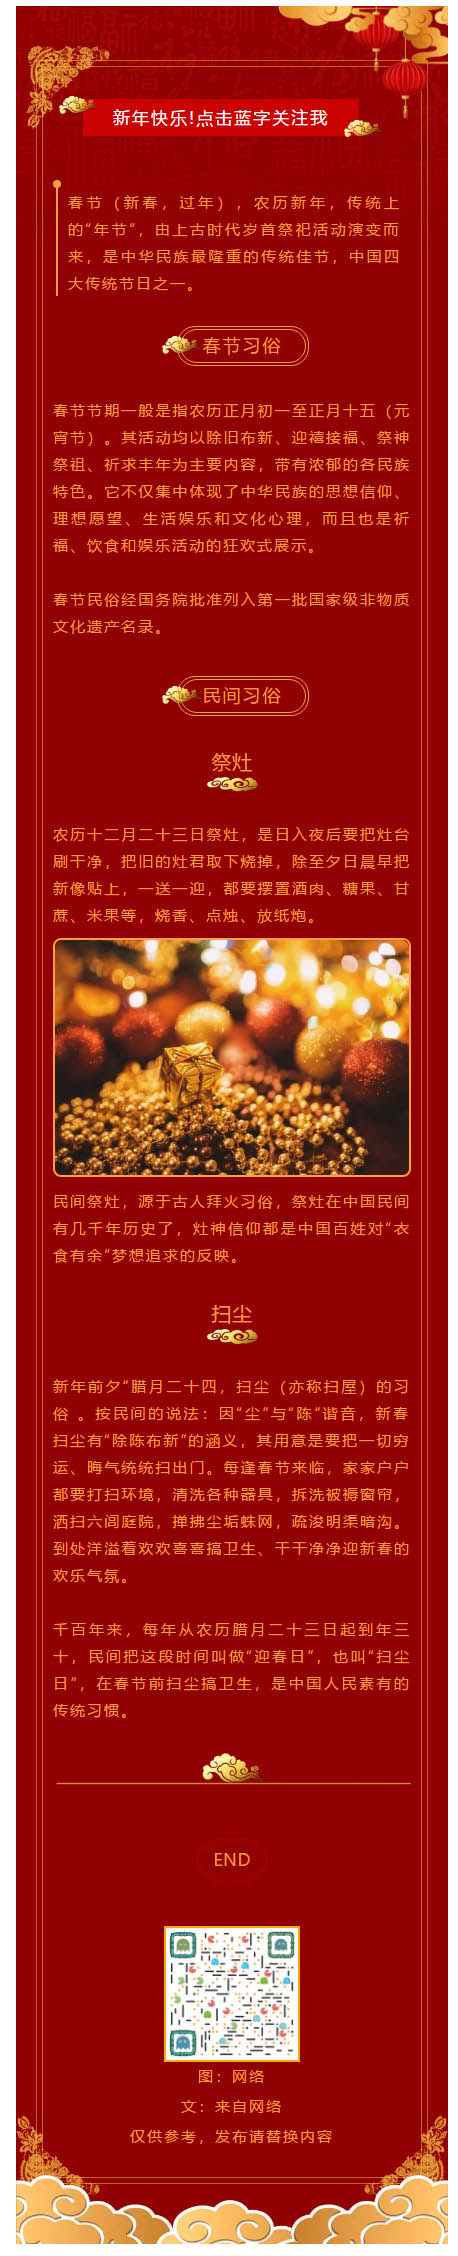 农历春节微信模板新年红色风格公众号文章模板推送图文素材